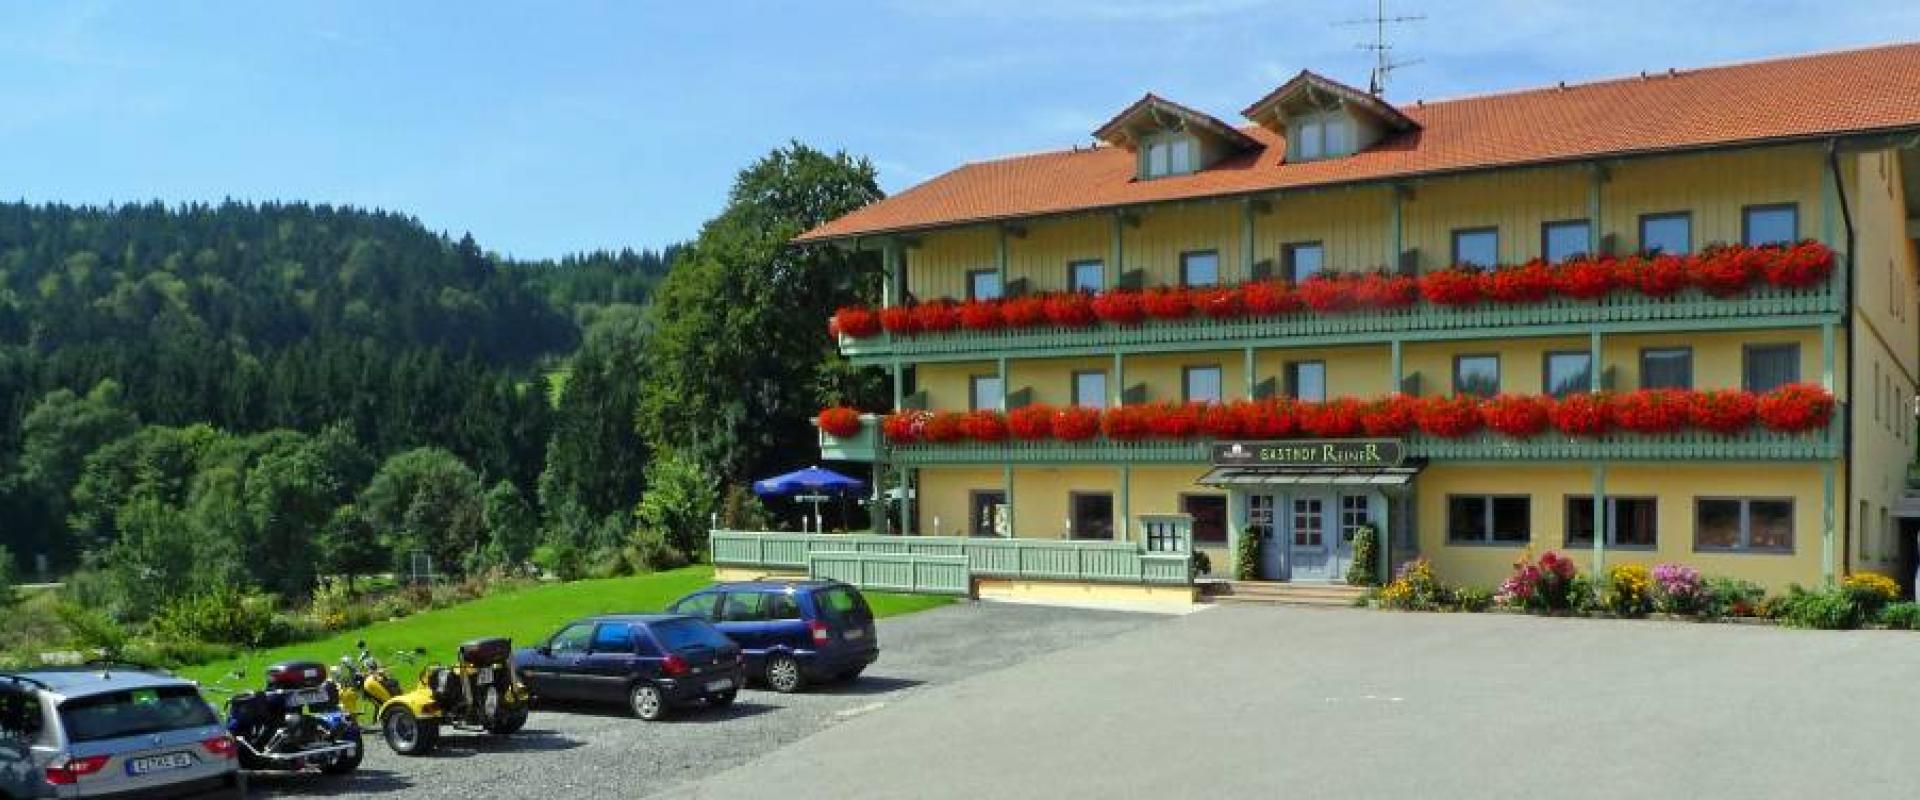 12501 Motorrad Hotel Reiner im Bayerischen Wald.jpg